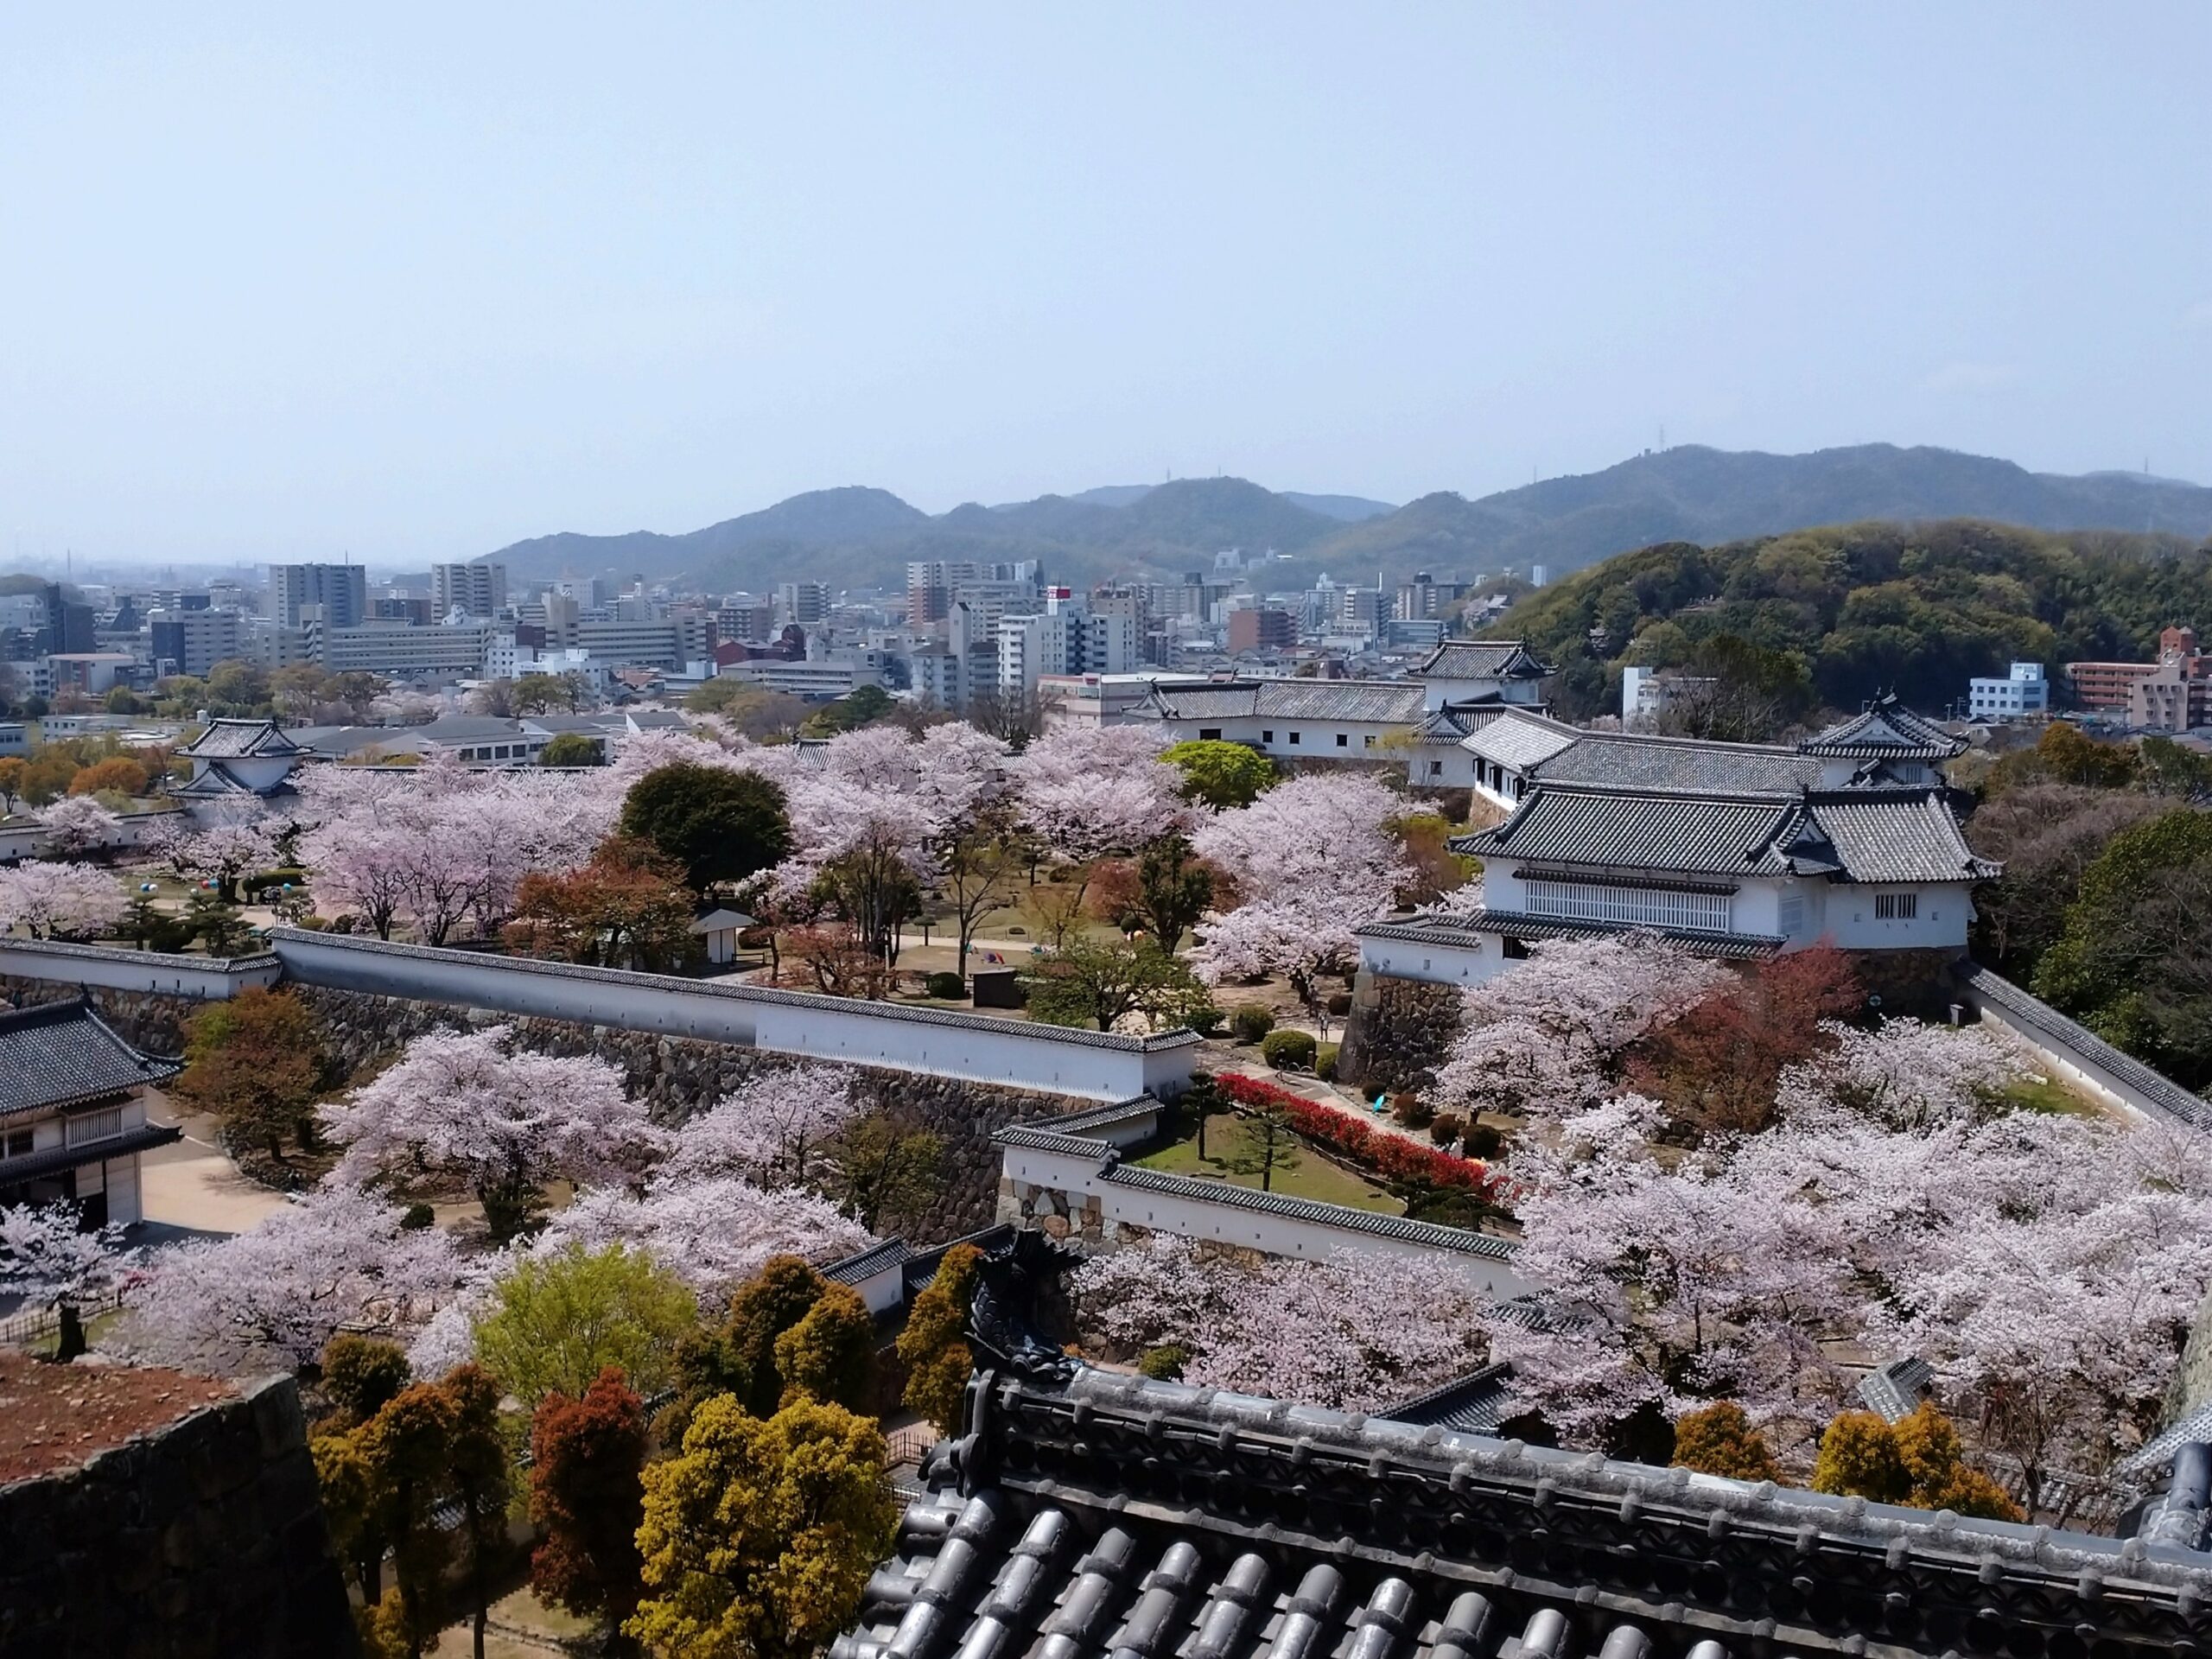 姬路城の上階から見た桜の景色